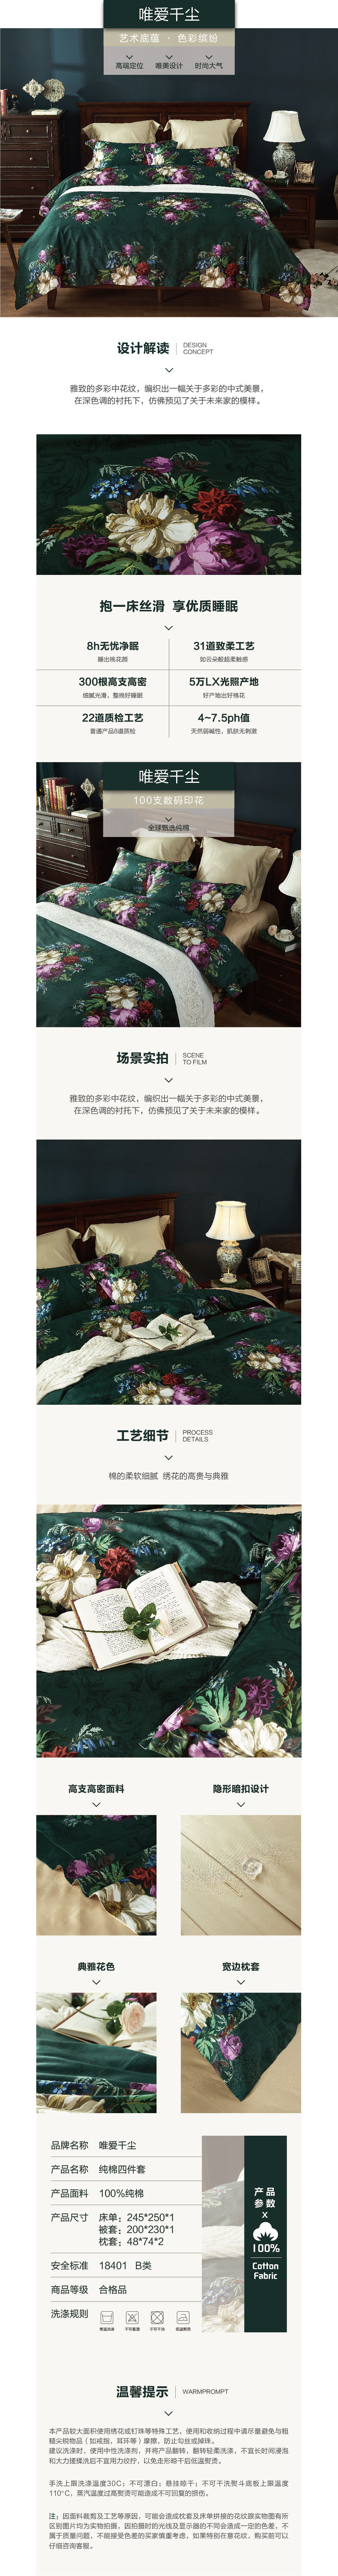 床上用品 纯棉四件套 蕾丝工艺 数码印花系列 唯爱千辰